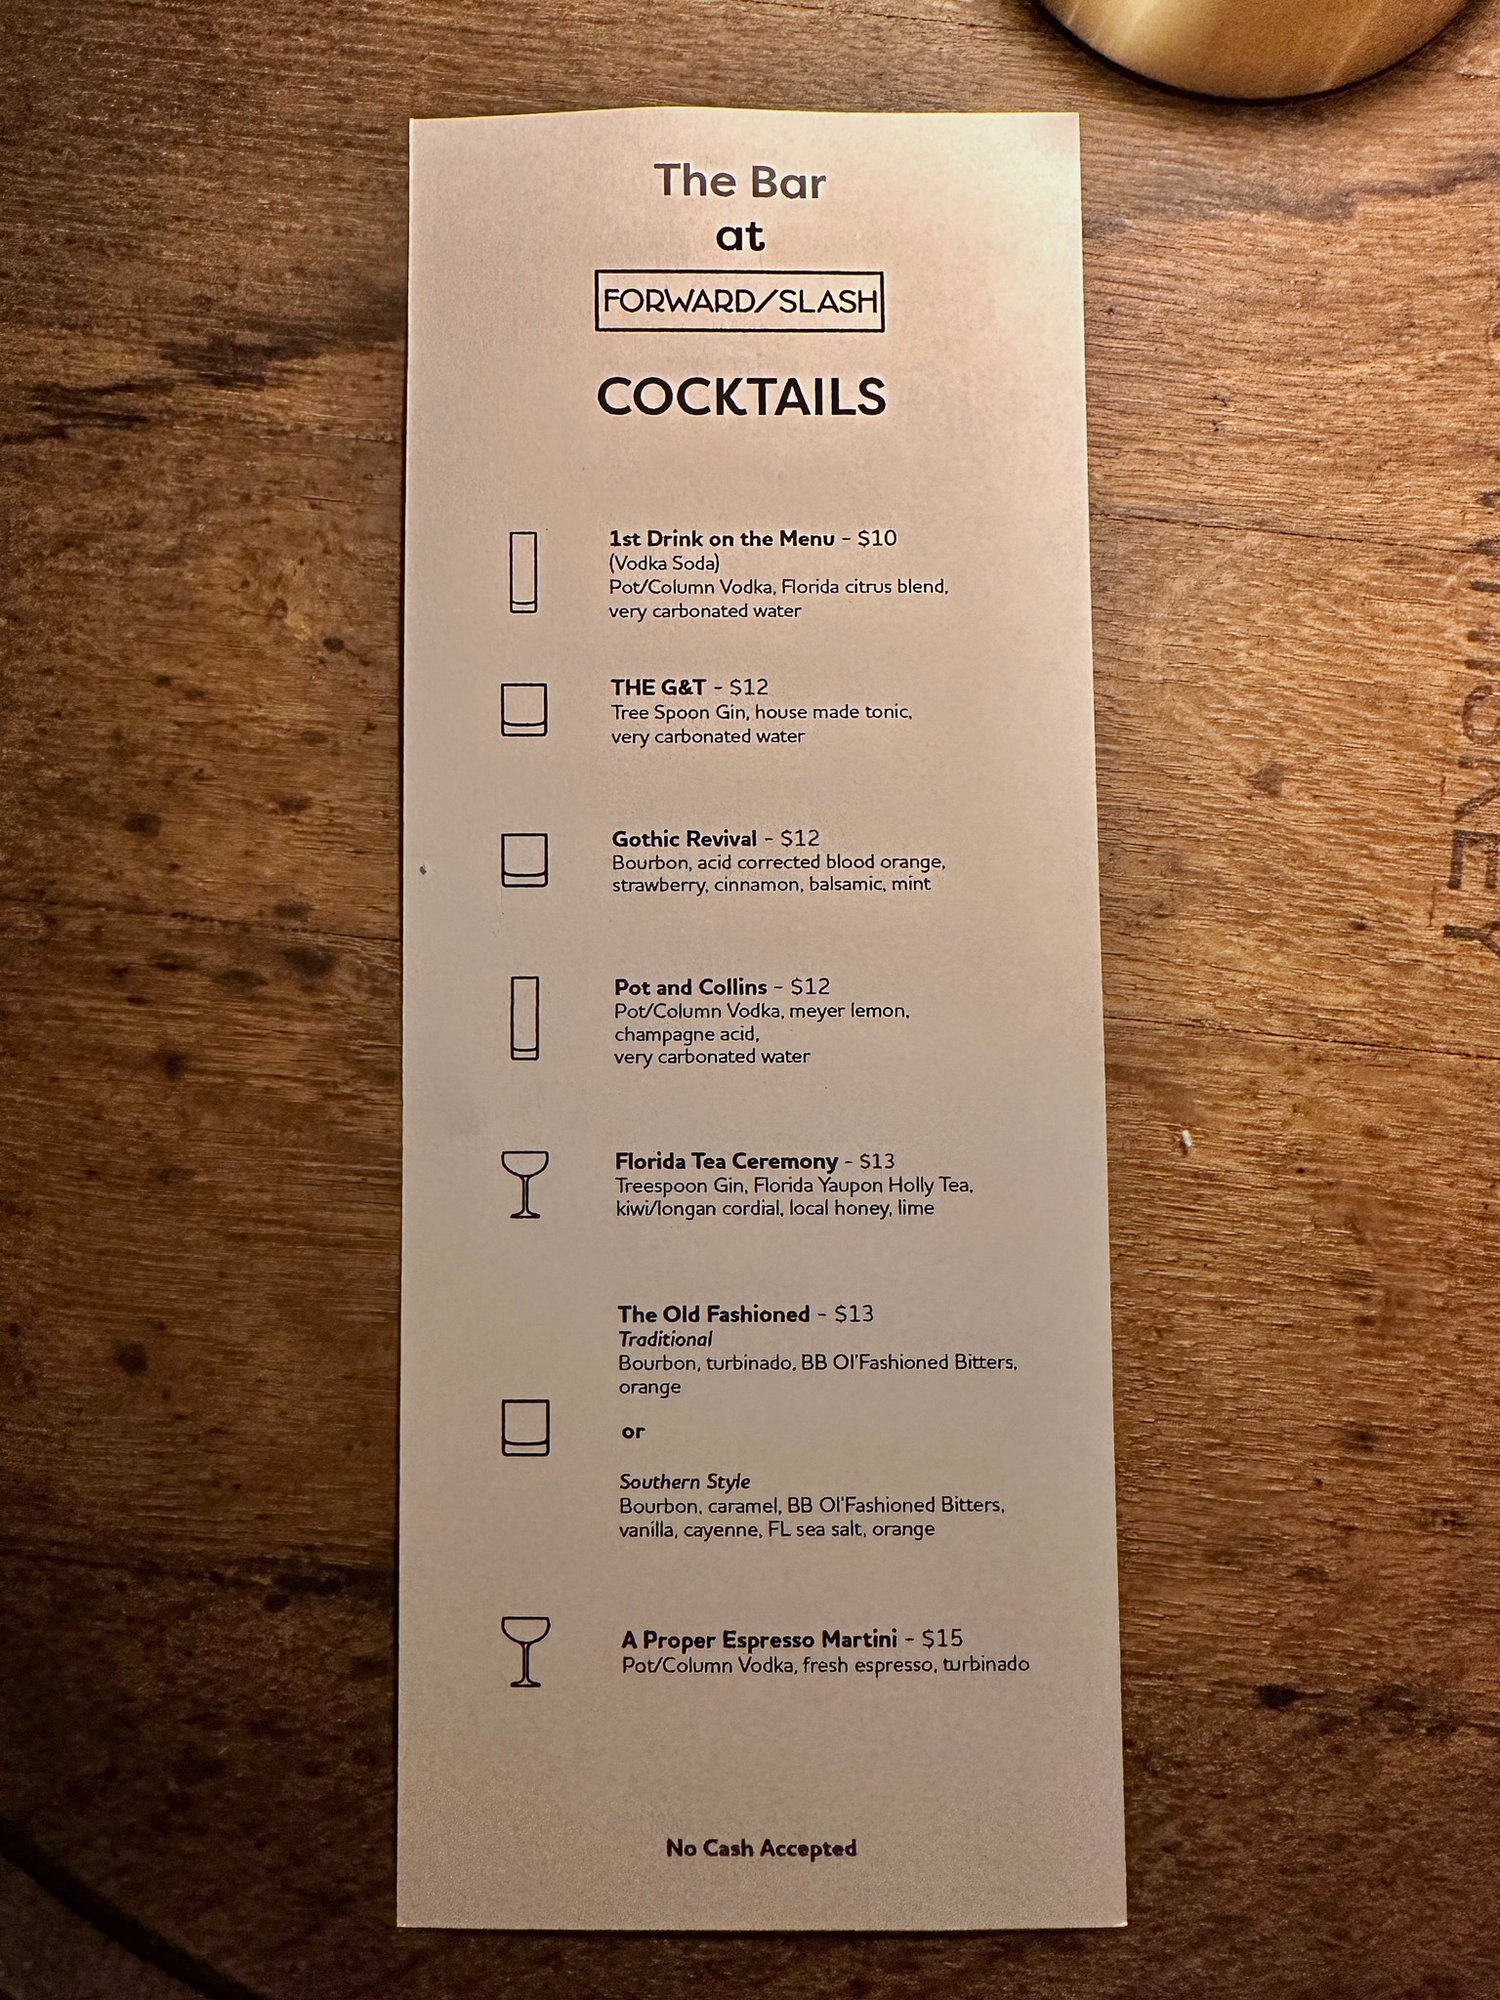 View of cocktail menu